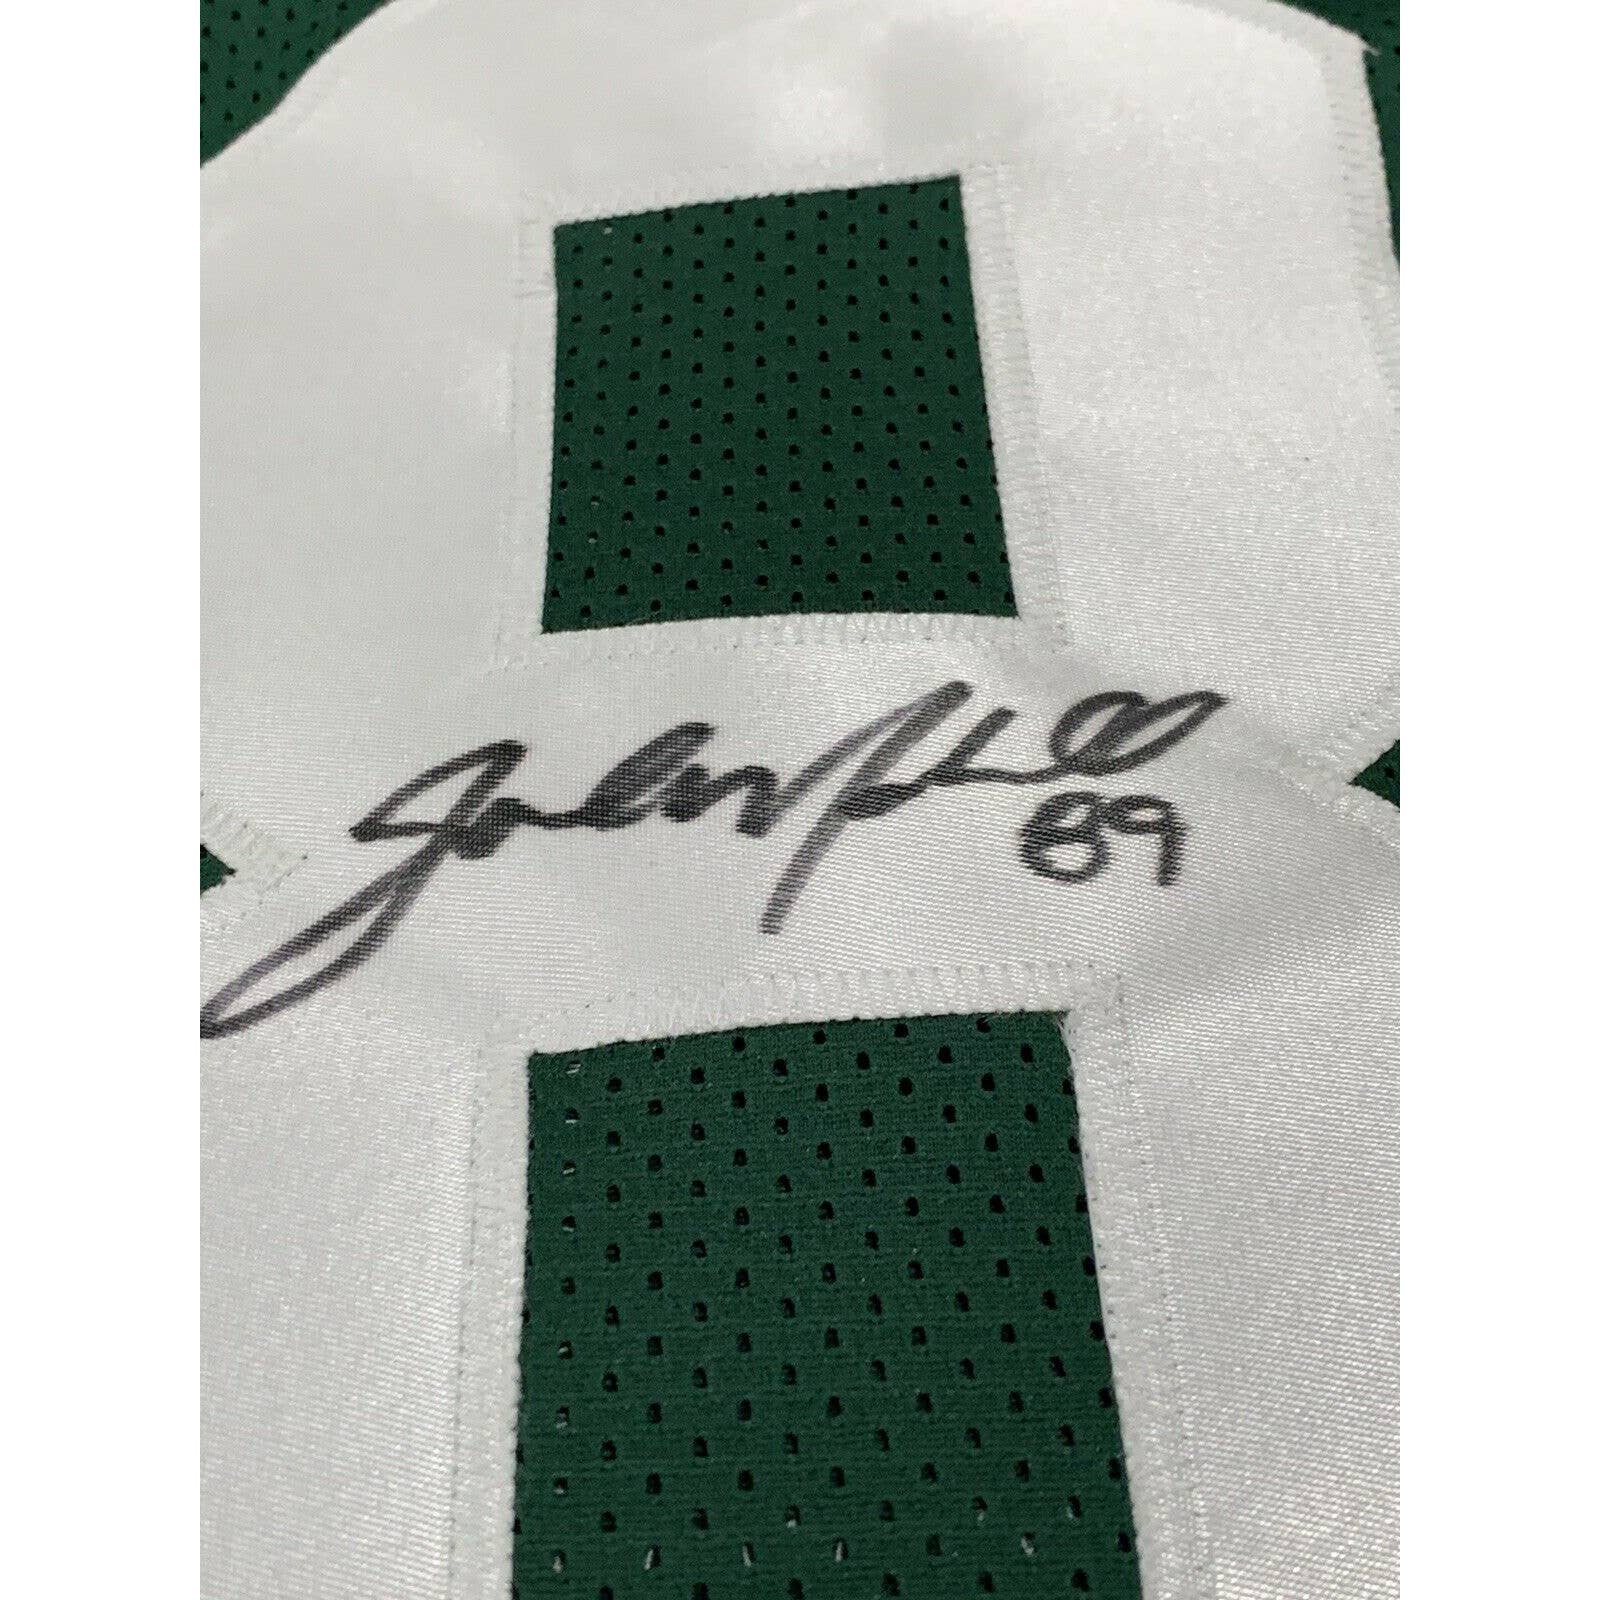 Jalin Marshall Autographed/Signed Jersey JSA COA New York Jets NY Auto - TreasuresEvolved